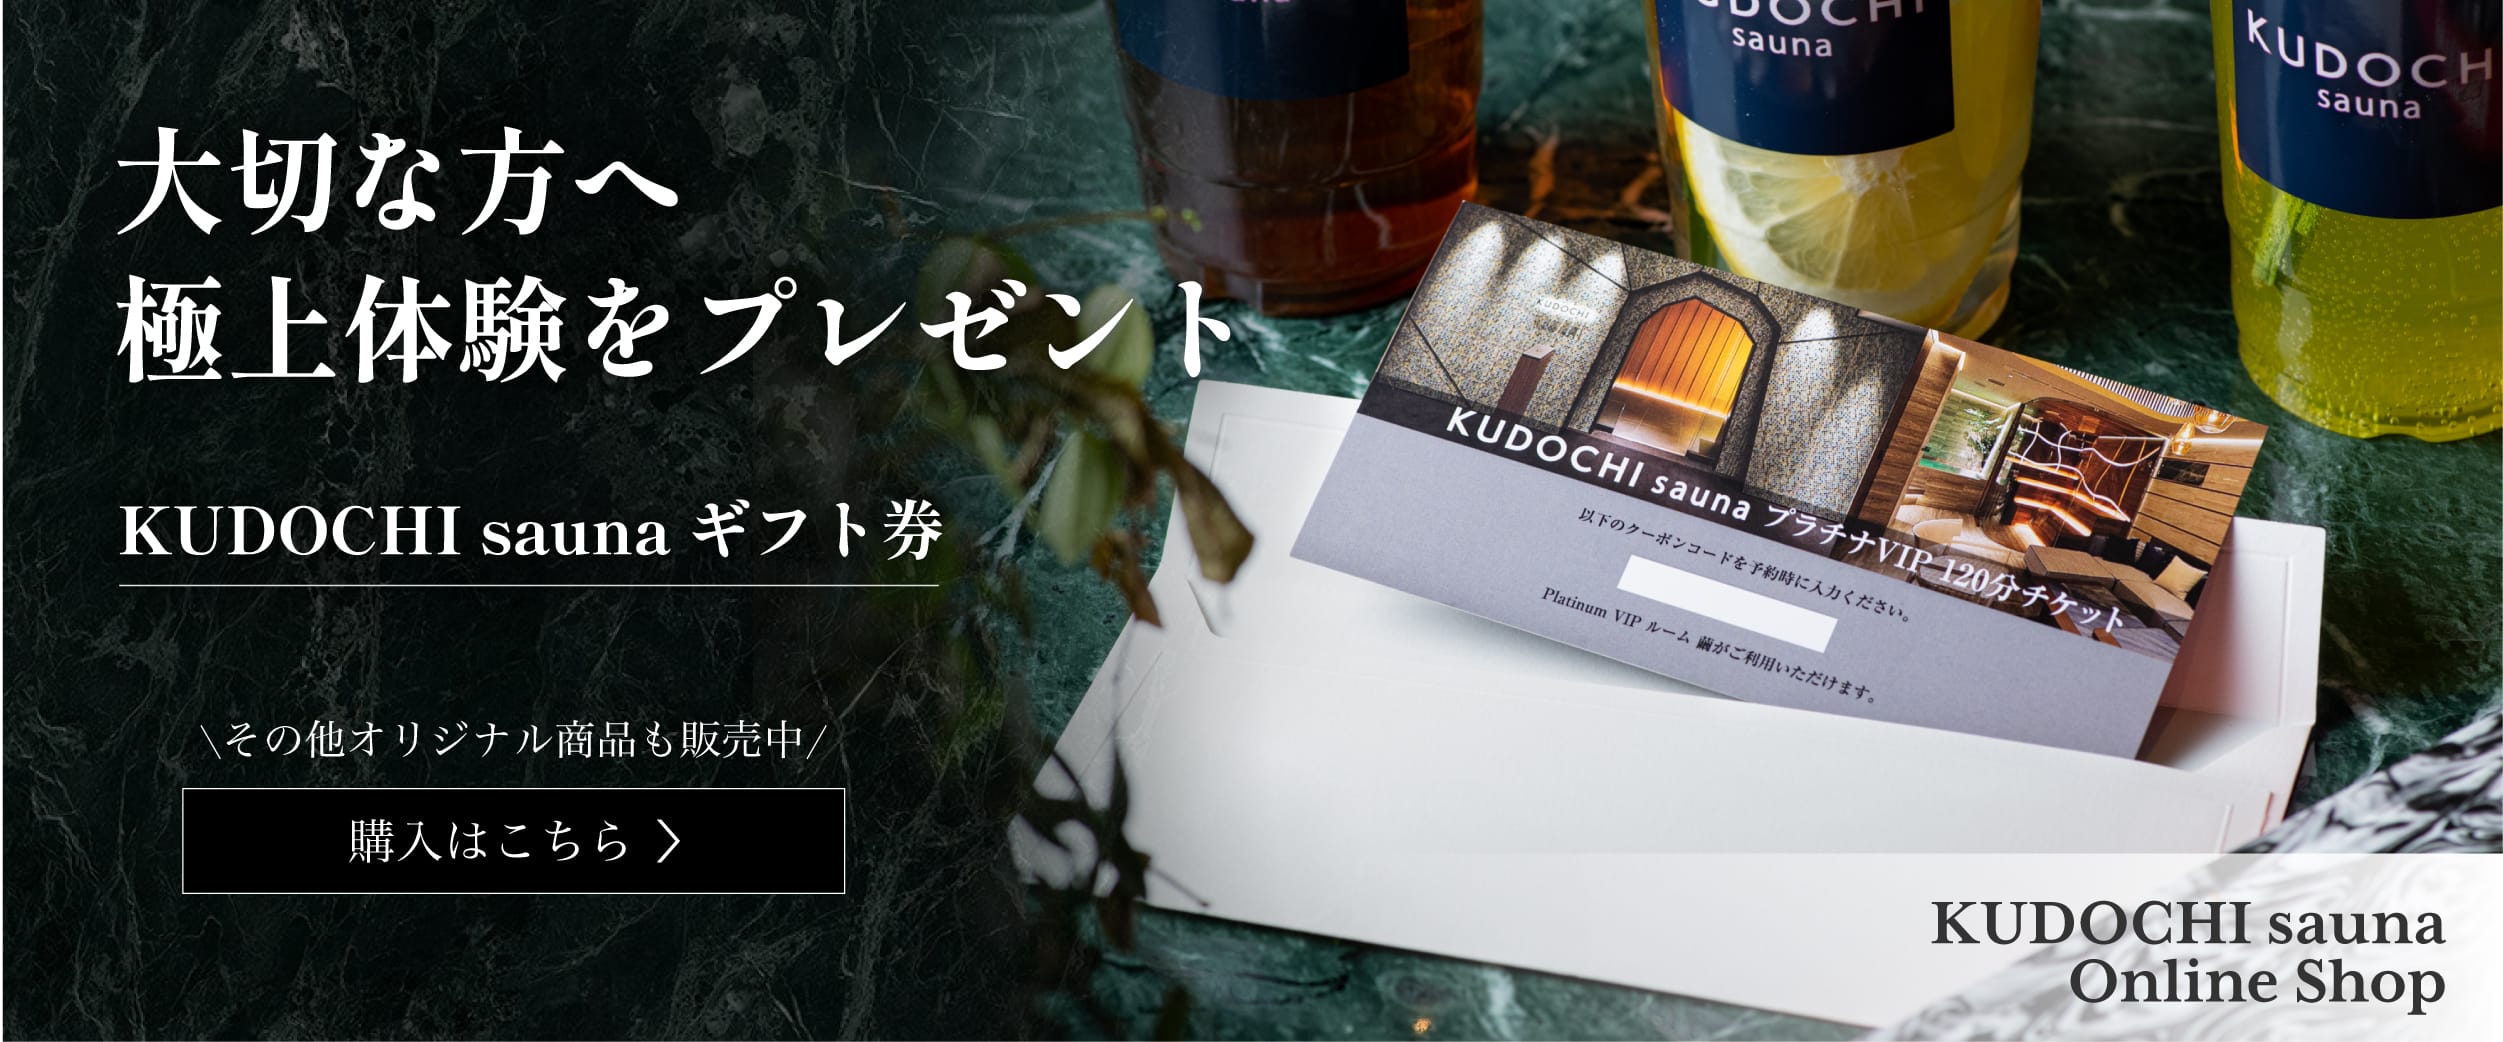 大切な方へ極上体験をプレゼント KUDOCHI saunaギフト券 その他オリジナル商品も販売中 購入はこちら